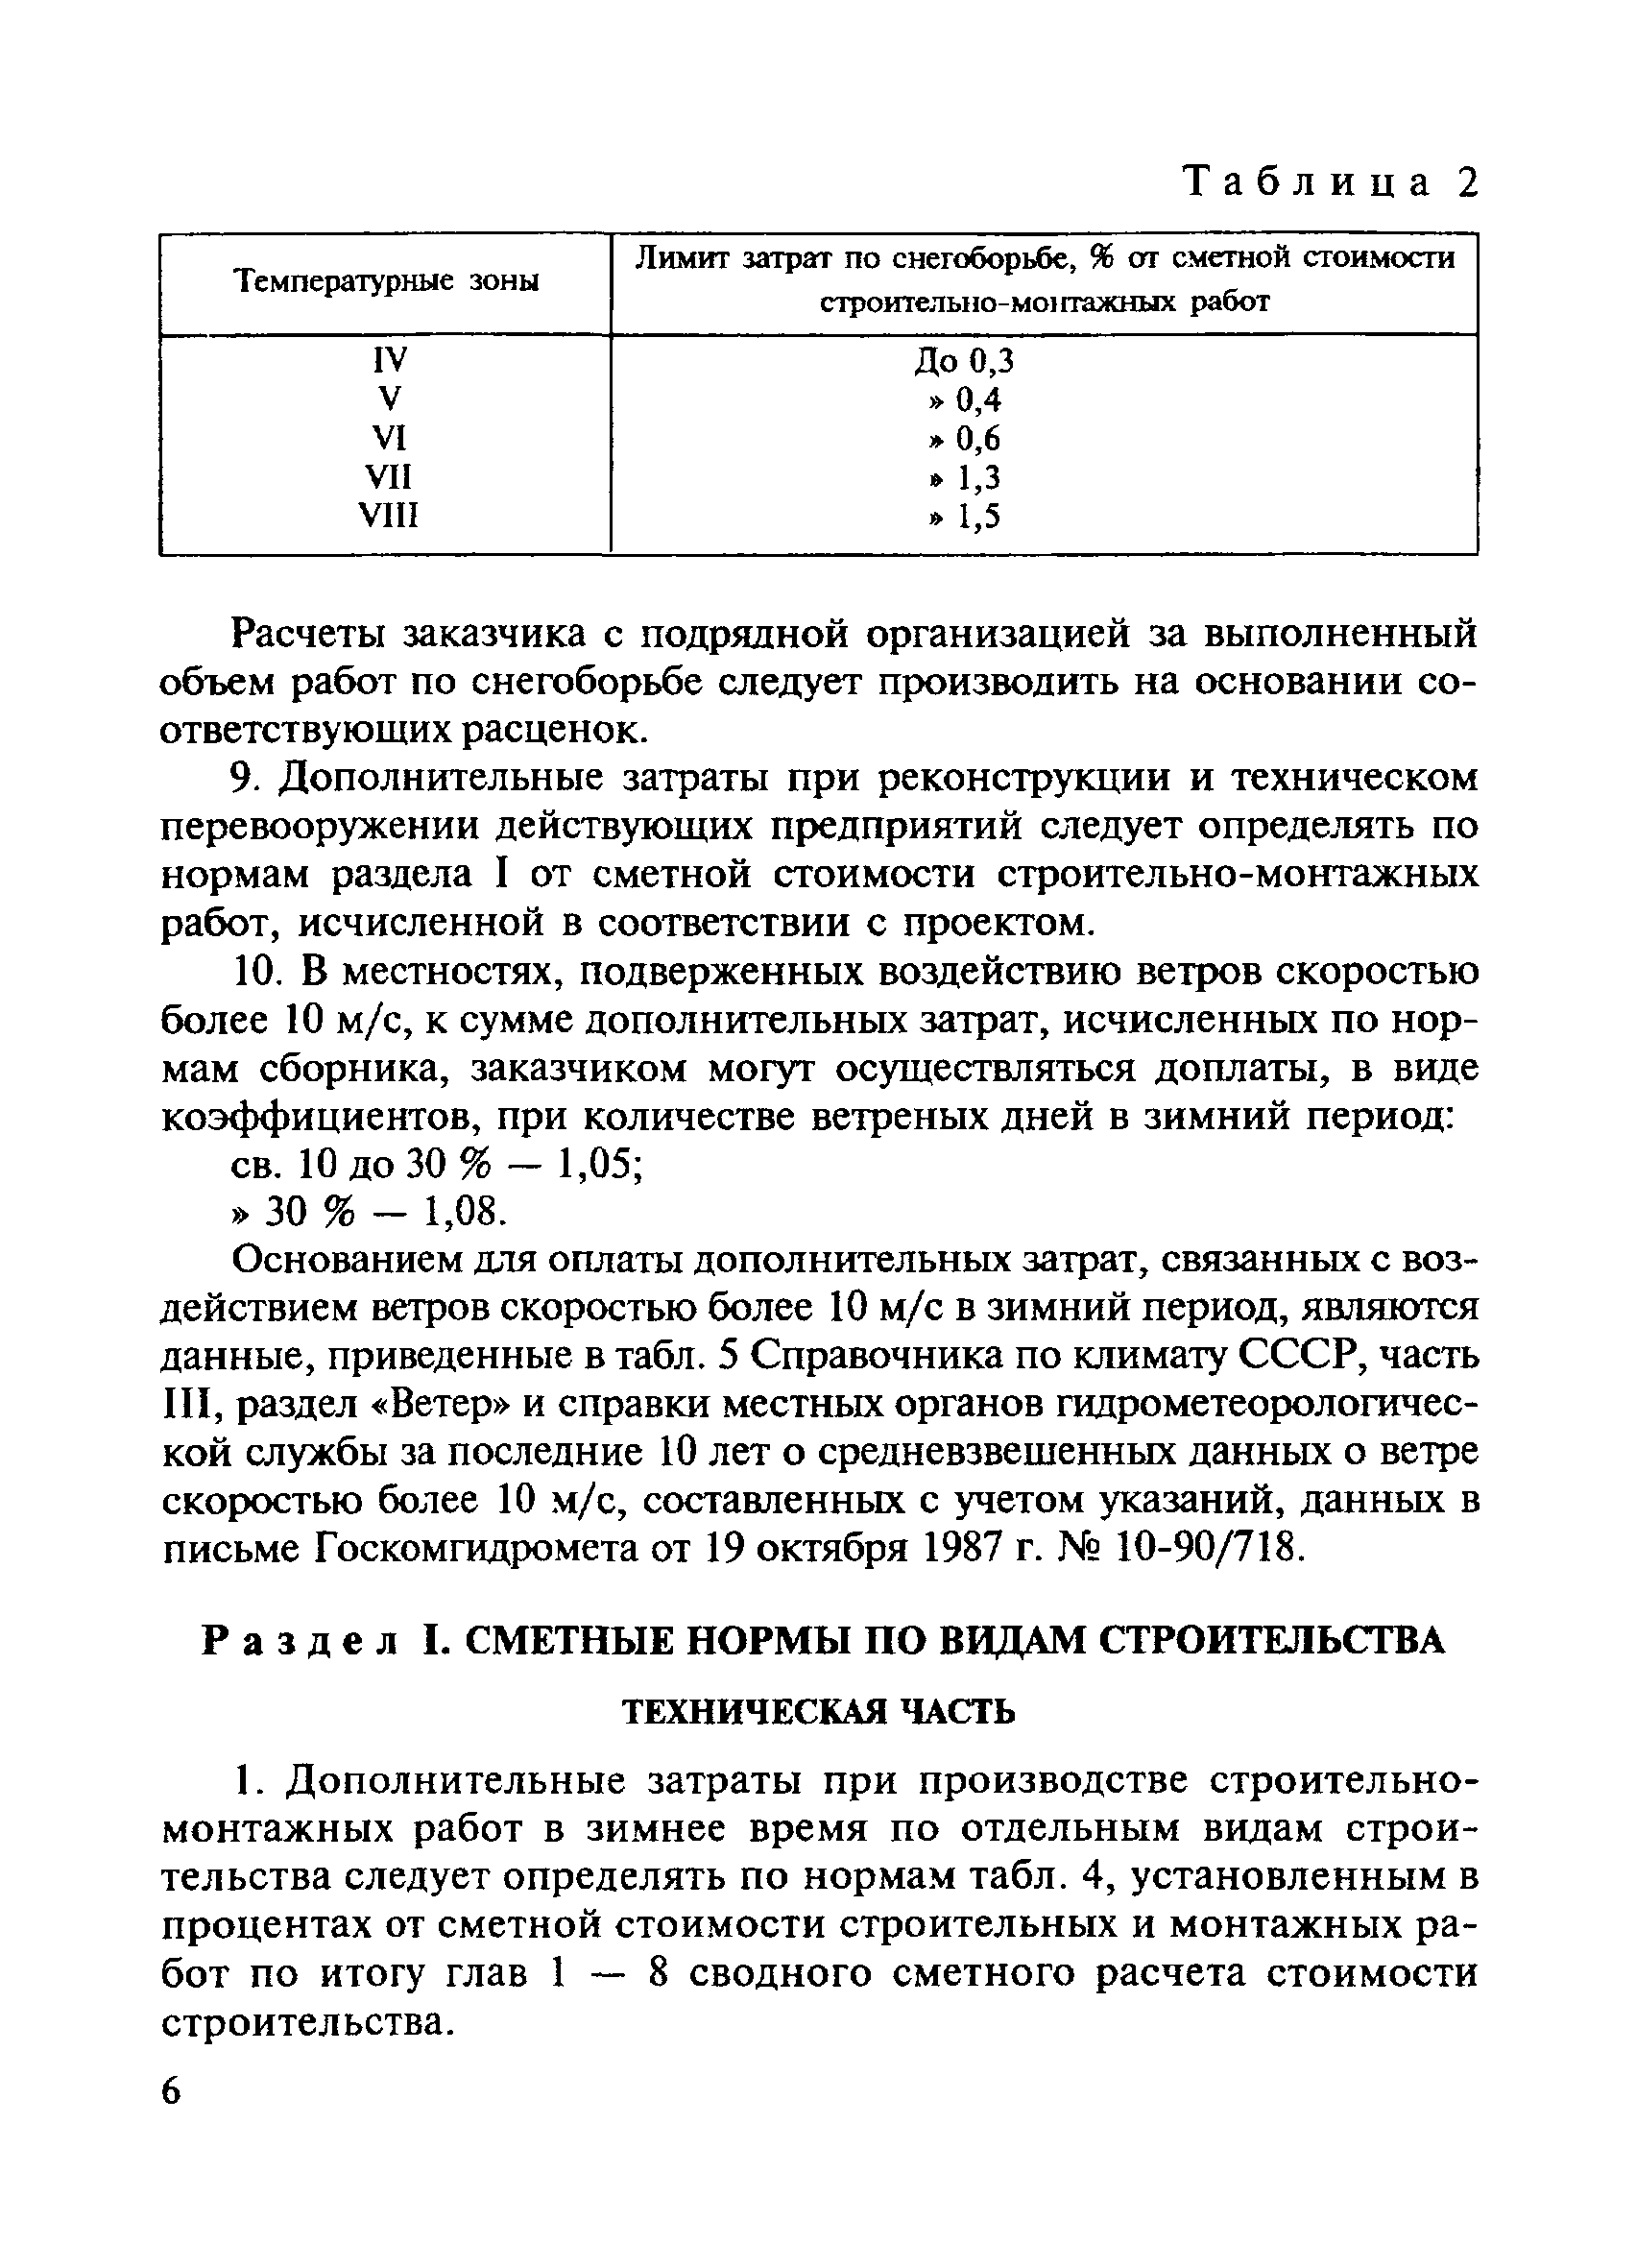 СНиП 4.07-91